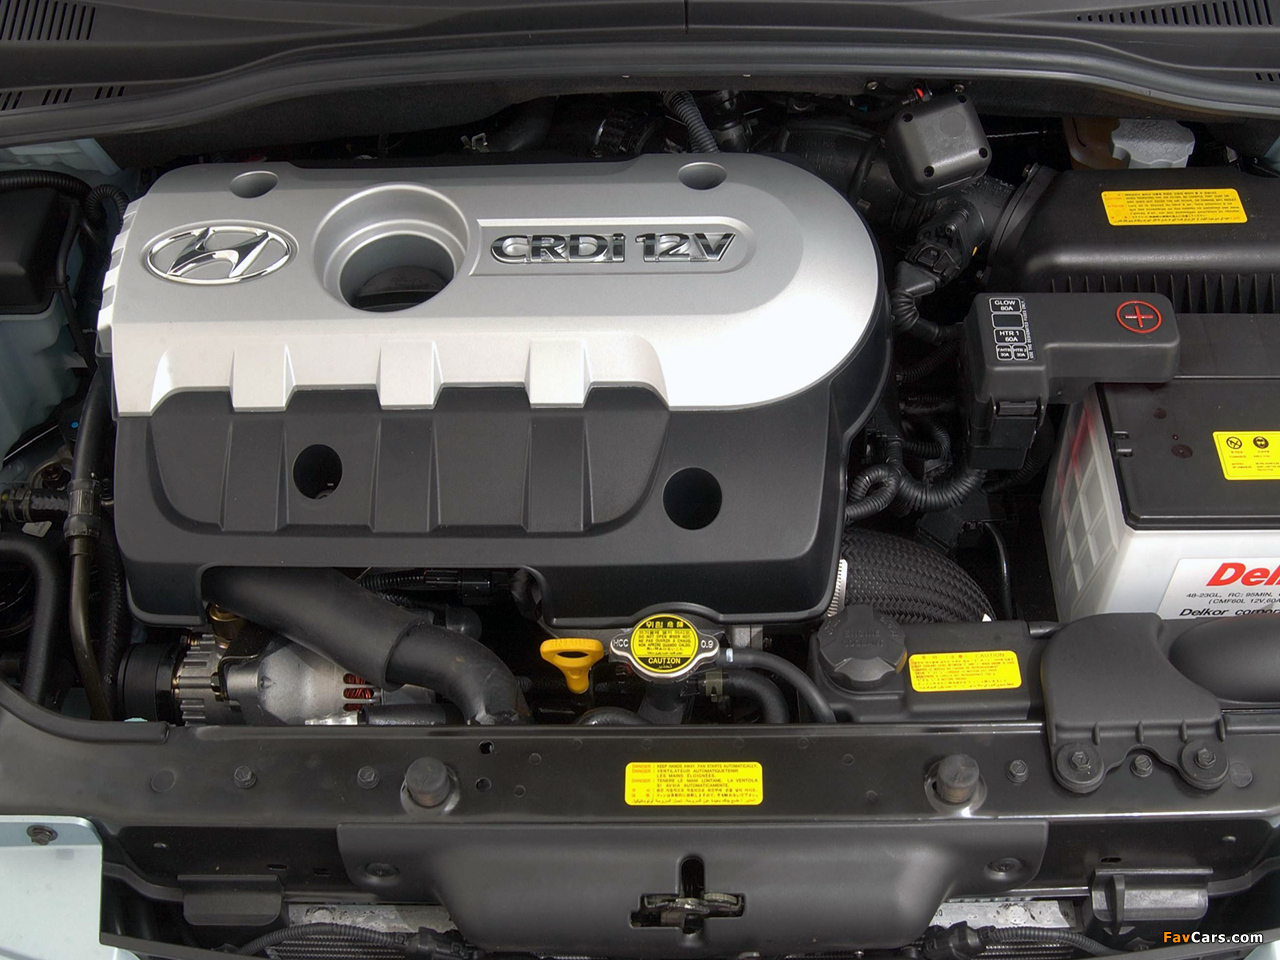 Стоит ли устанавливать защиту картера двигателя на Hyundai Getz?